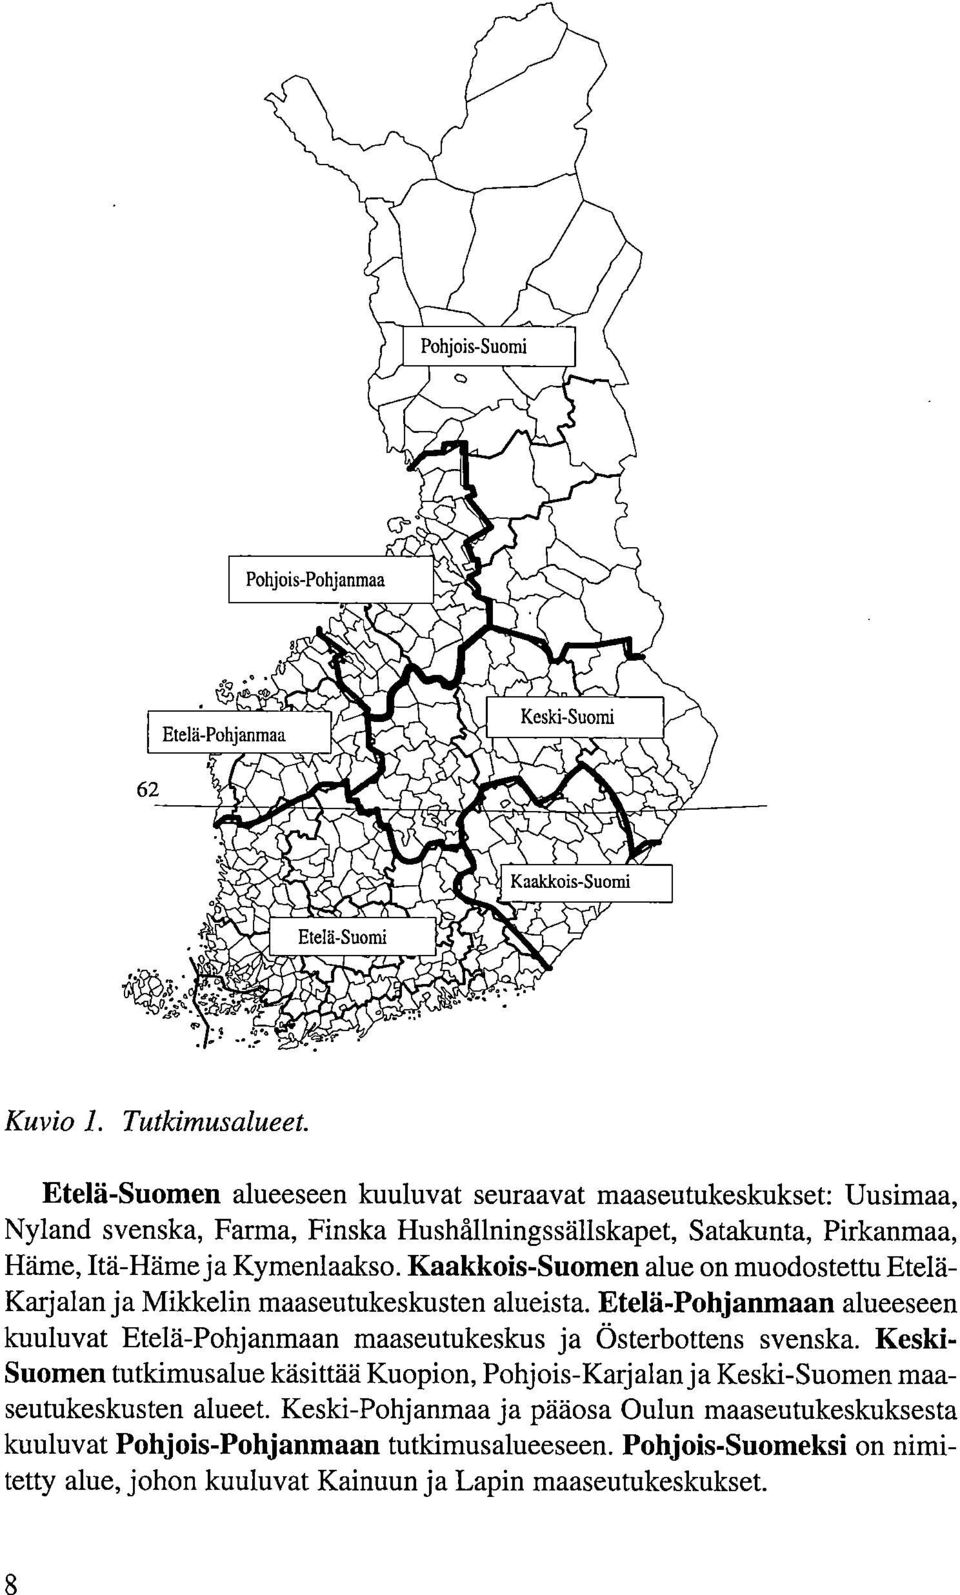 Tutkimusalueet. Etelä-Suomen alueeseen kuuluvat seuraavat maaseutukeskukset: Uusimaa, Nyland svenska, Farma, Finska Hushållningssällskapet, Satakunta, Pirkanmaa, Häme, Itä-Häme ja Kymenlaakso.